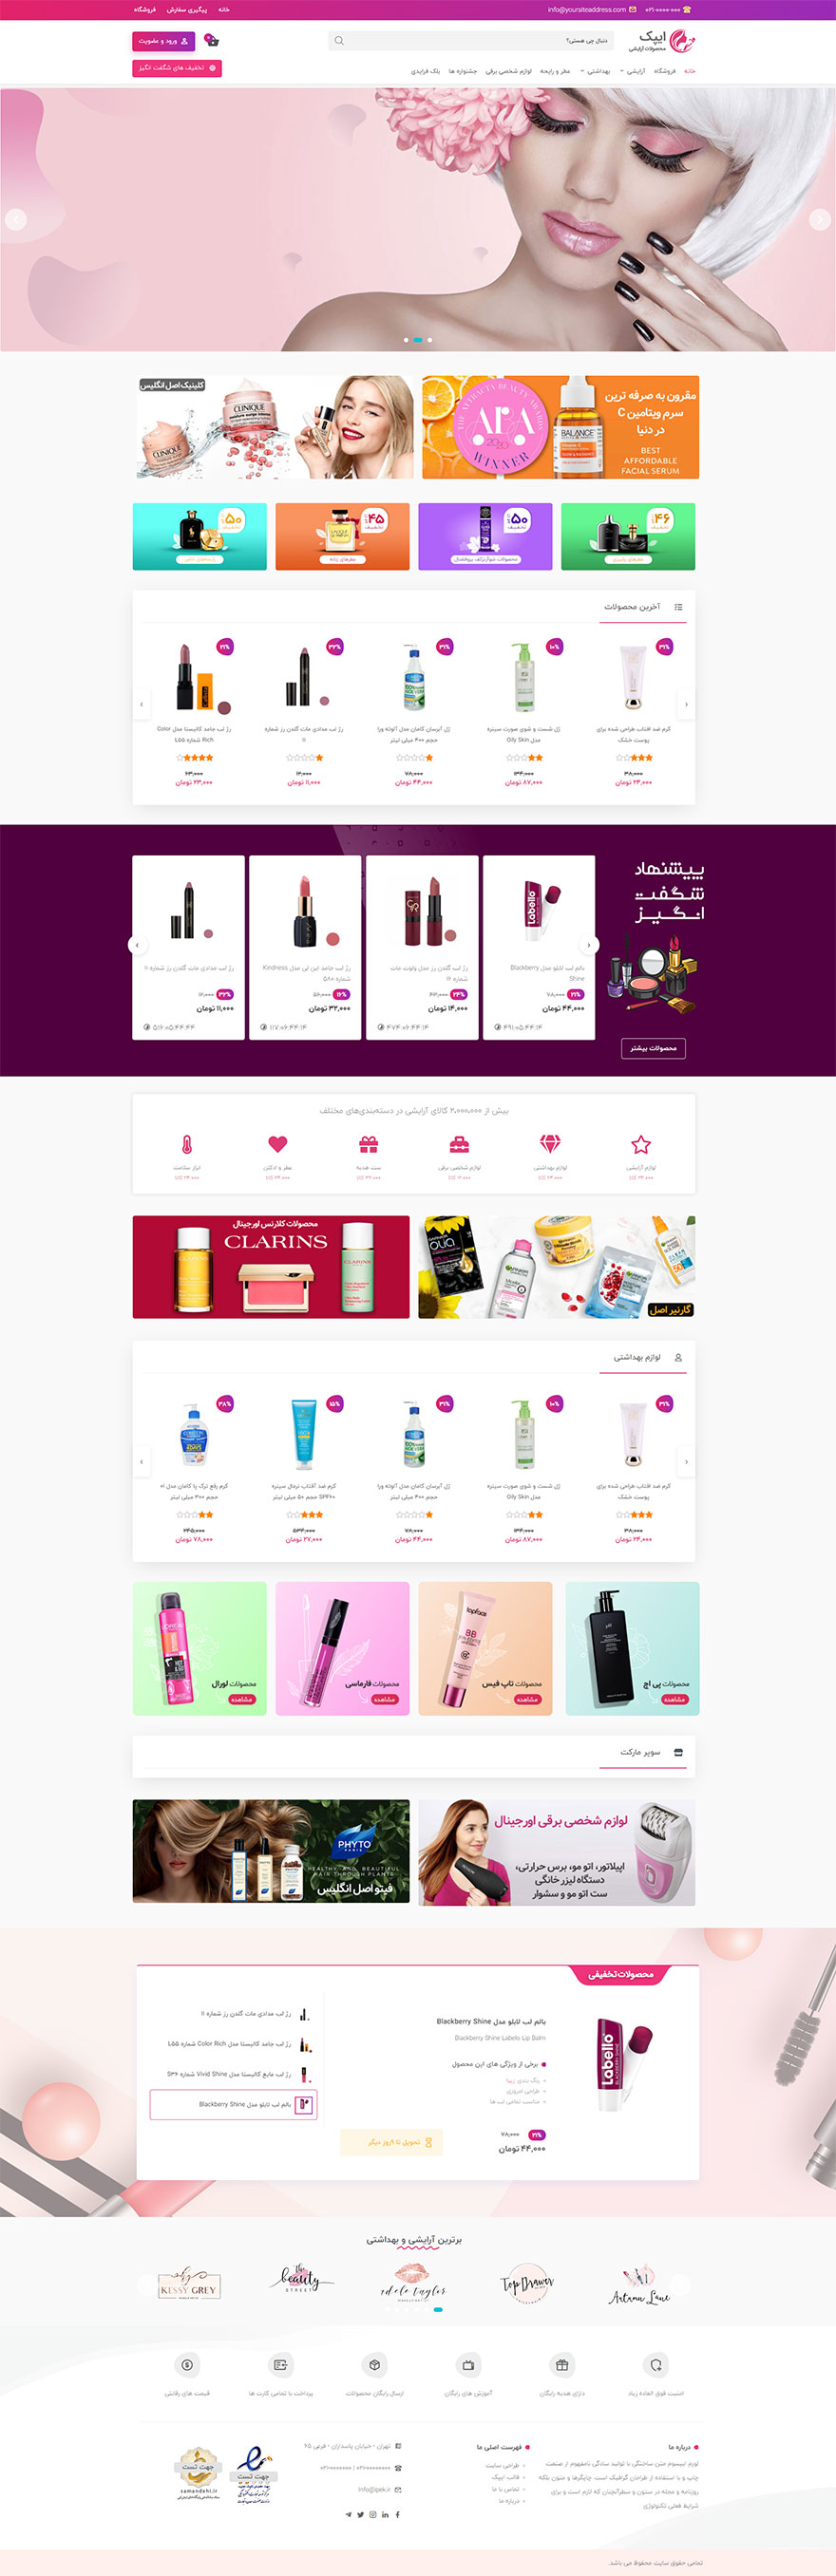 طراحی سایت محصولات آرایشی ایپک